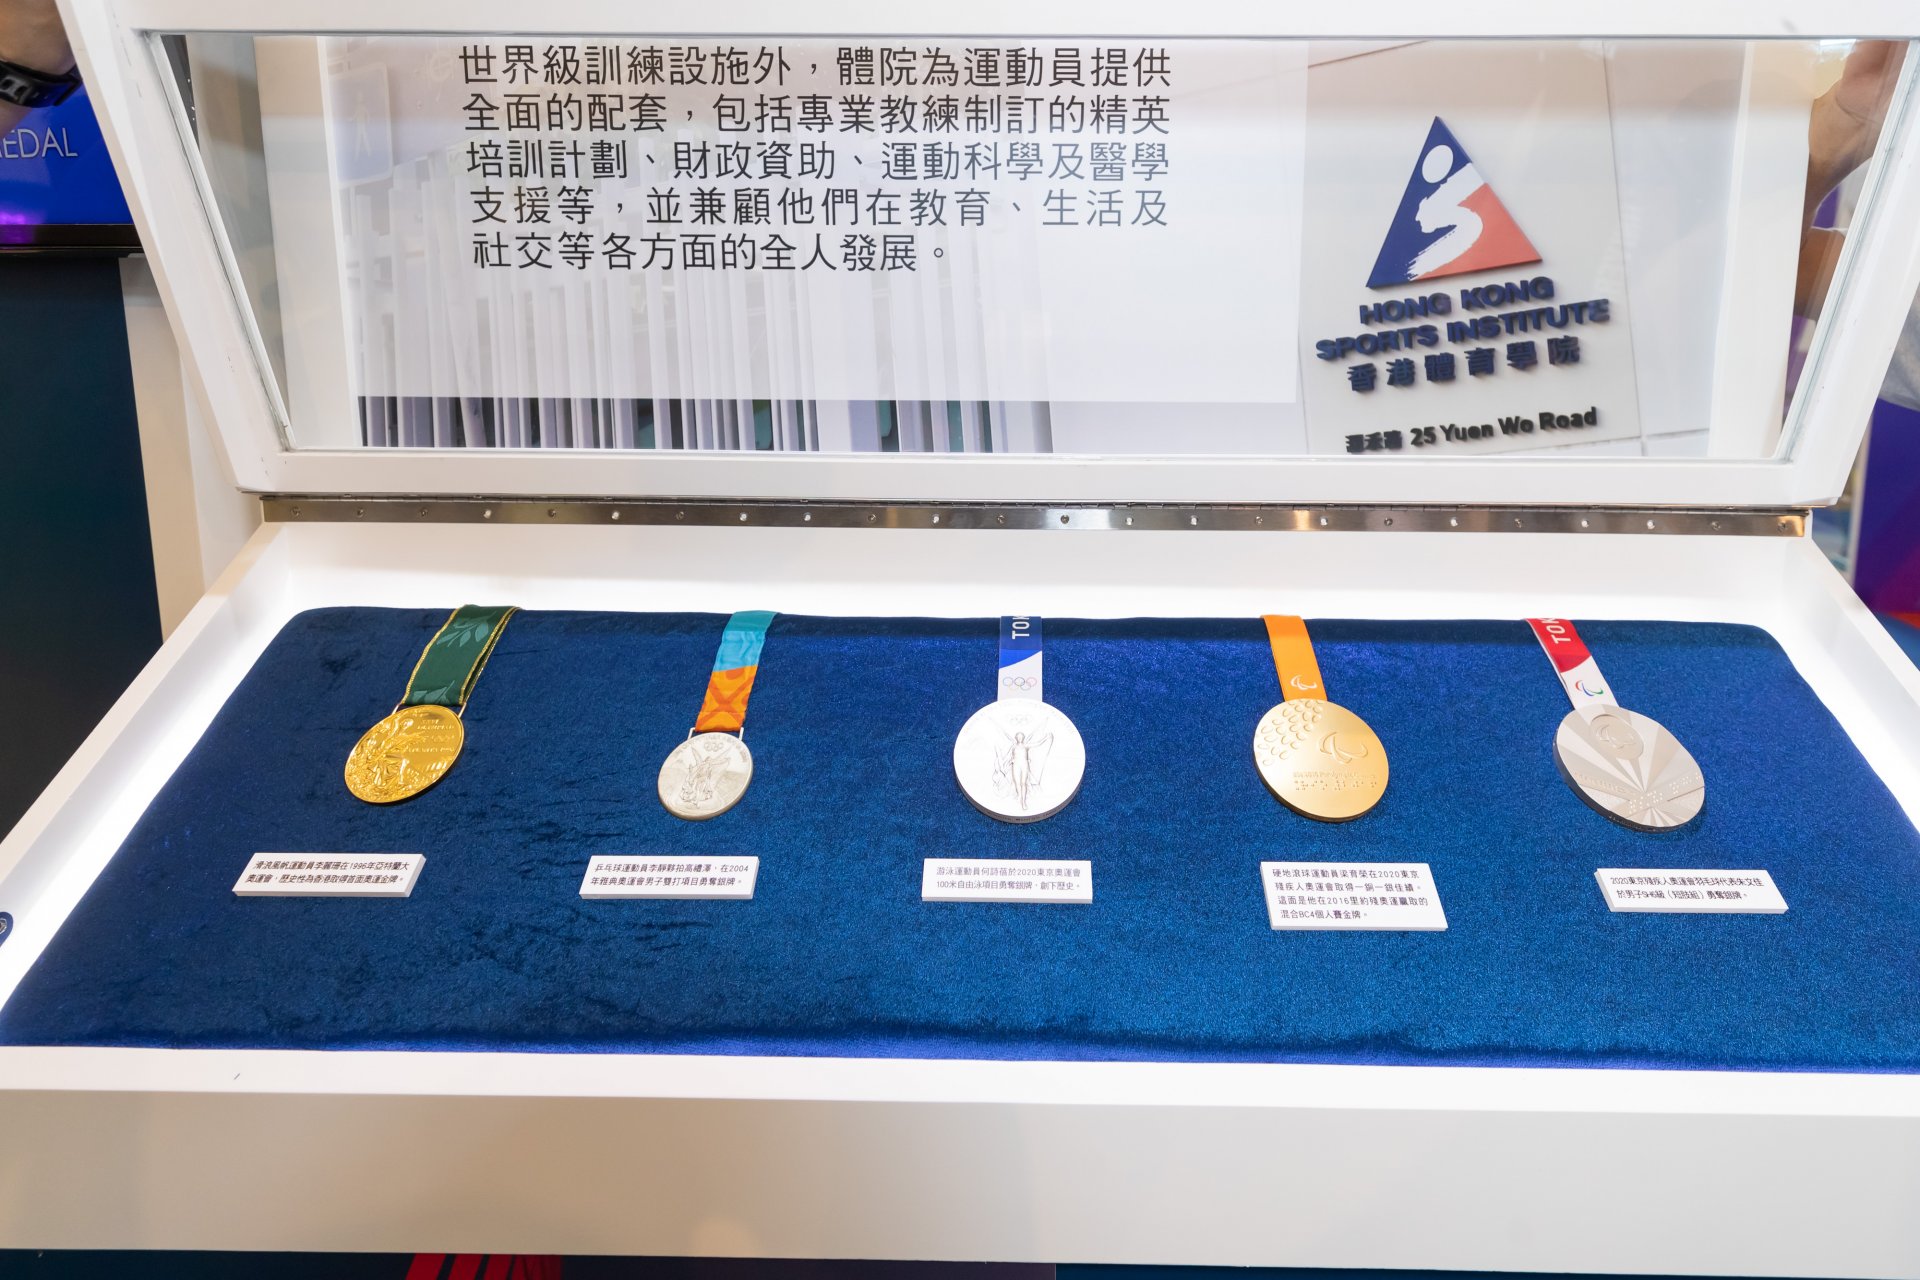 運動員辛苦贏得的奧運獎牌會在巡迴展中展示（圖片來源：香港體育學院官網）